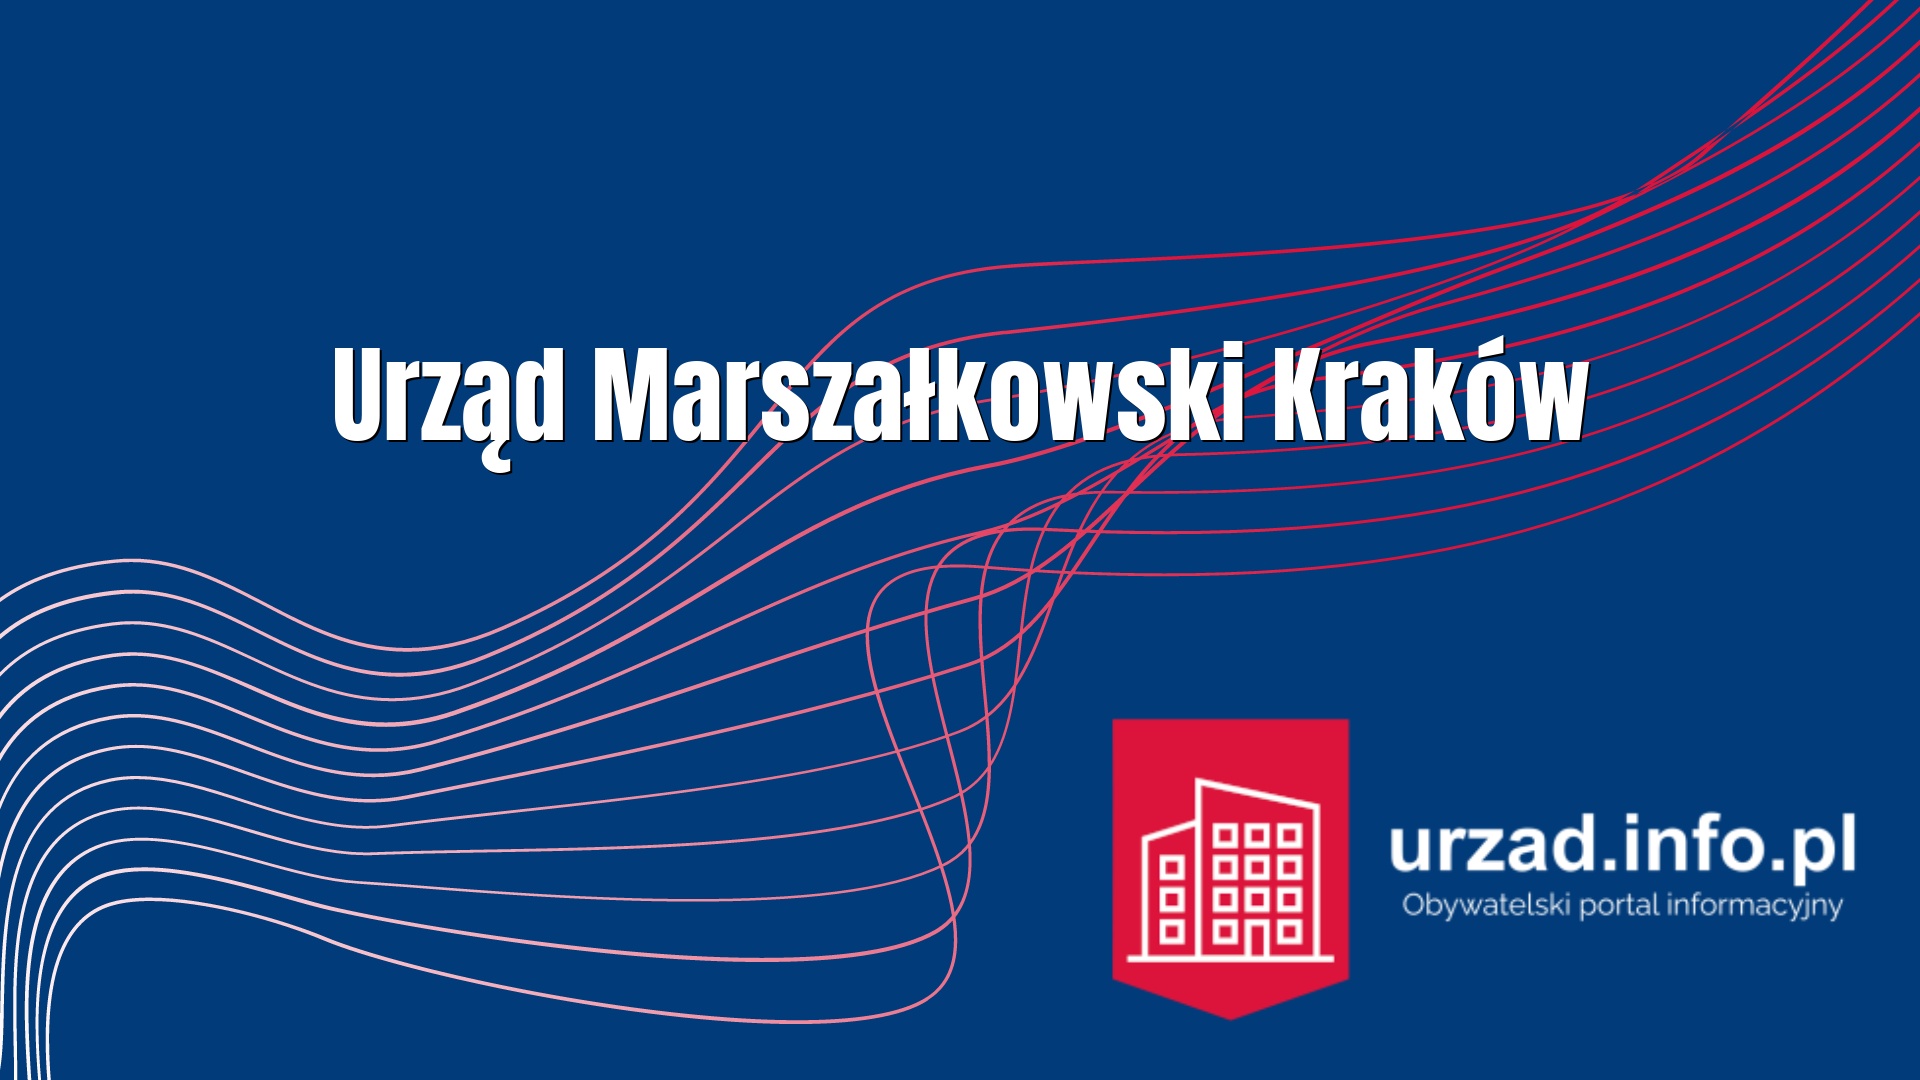 Urząd Marszałkowski Kraków